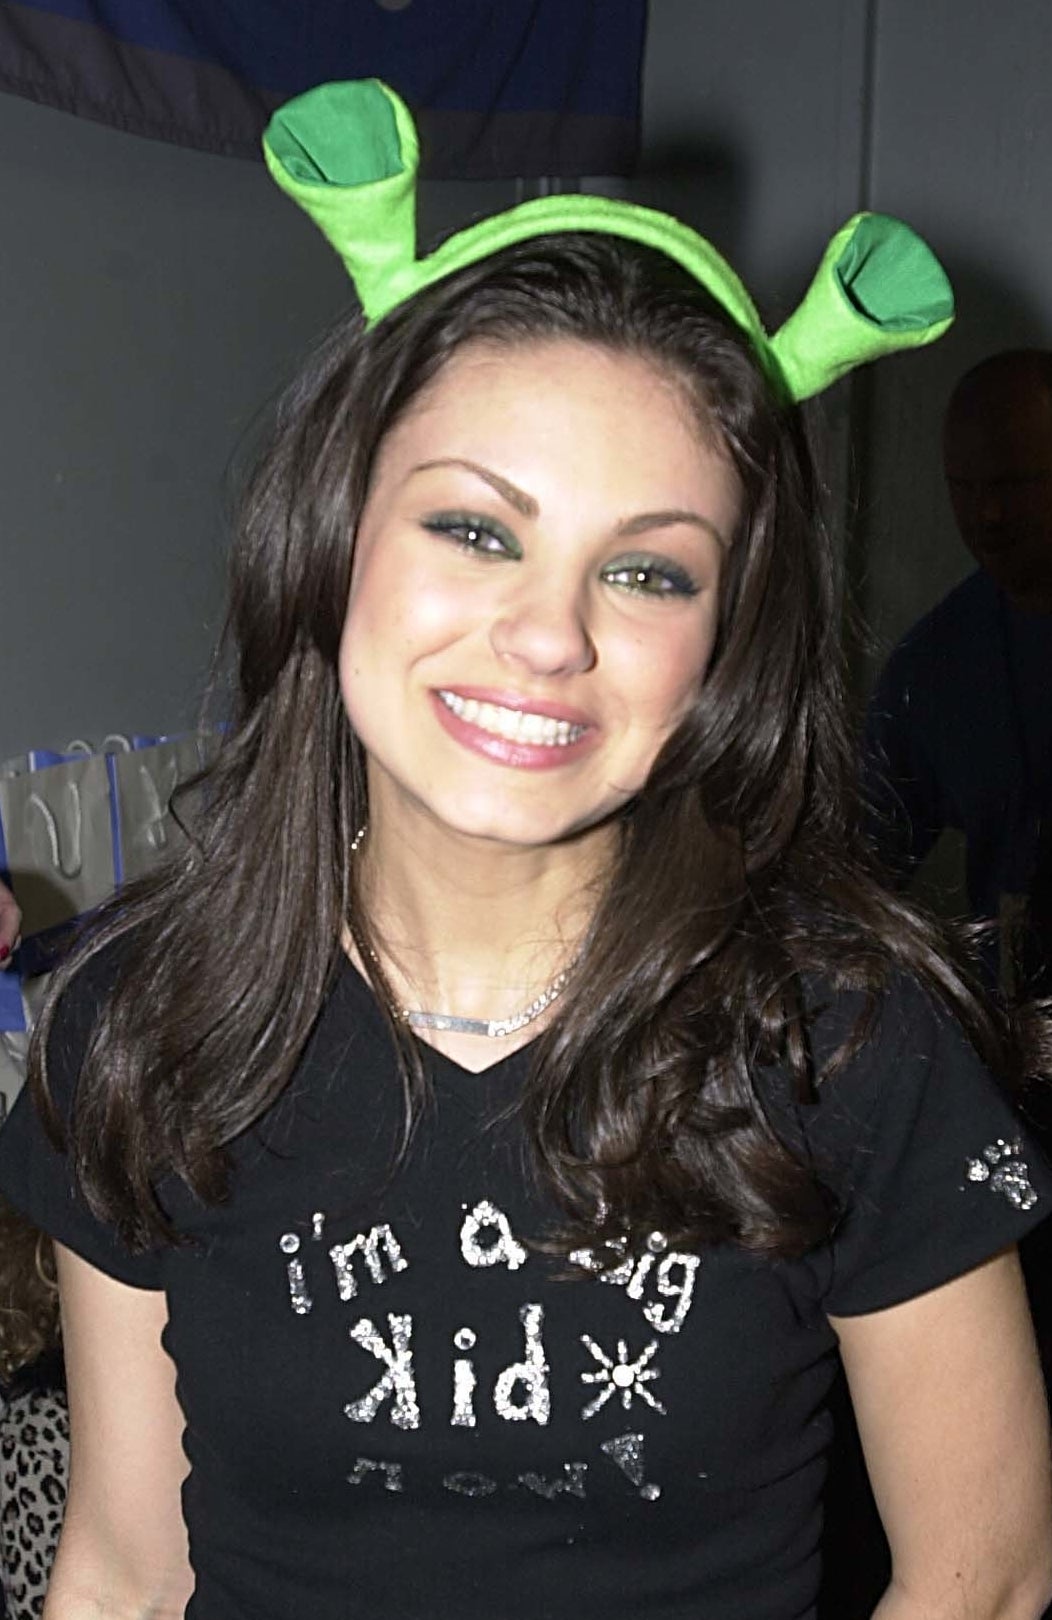 Mila wearing Shrek ears